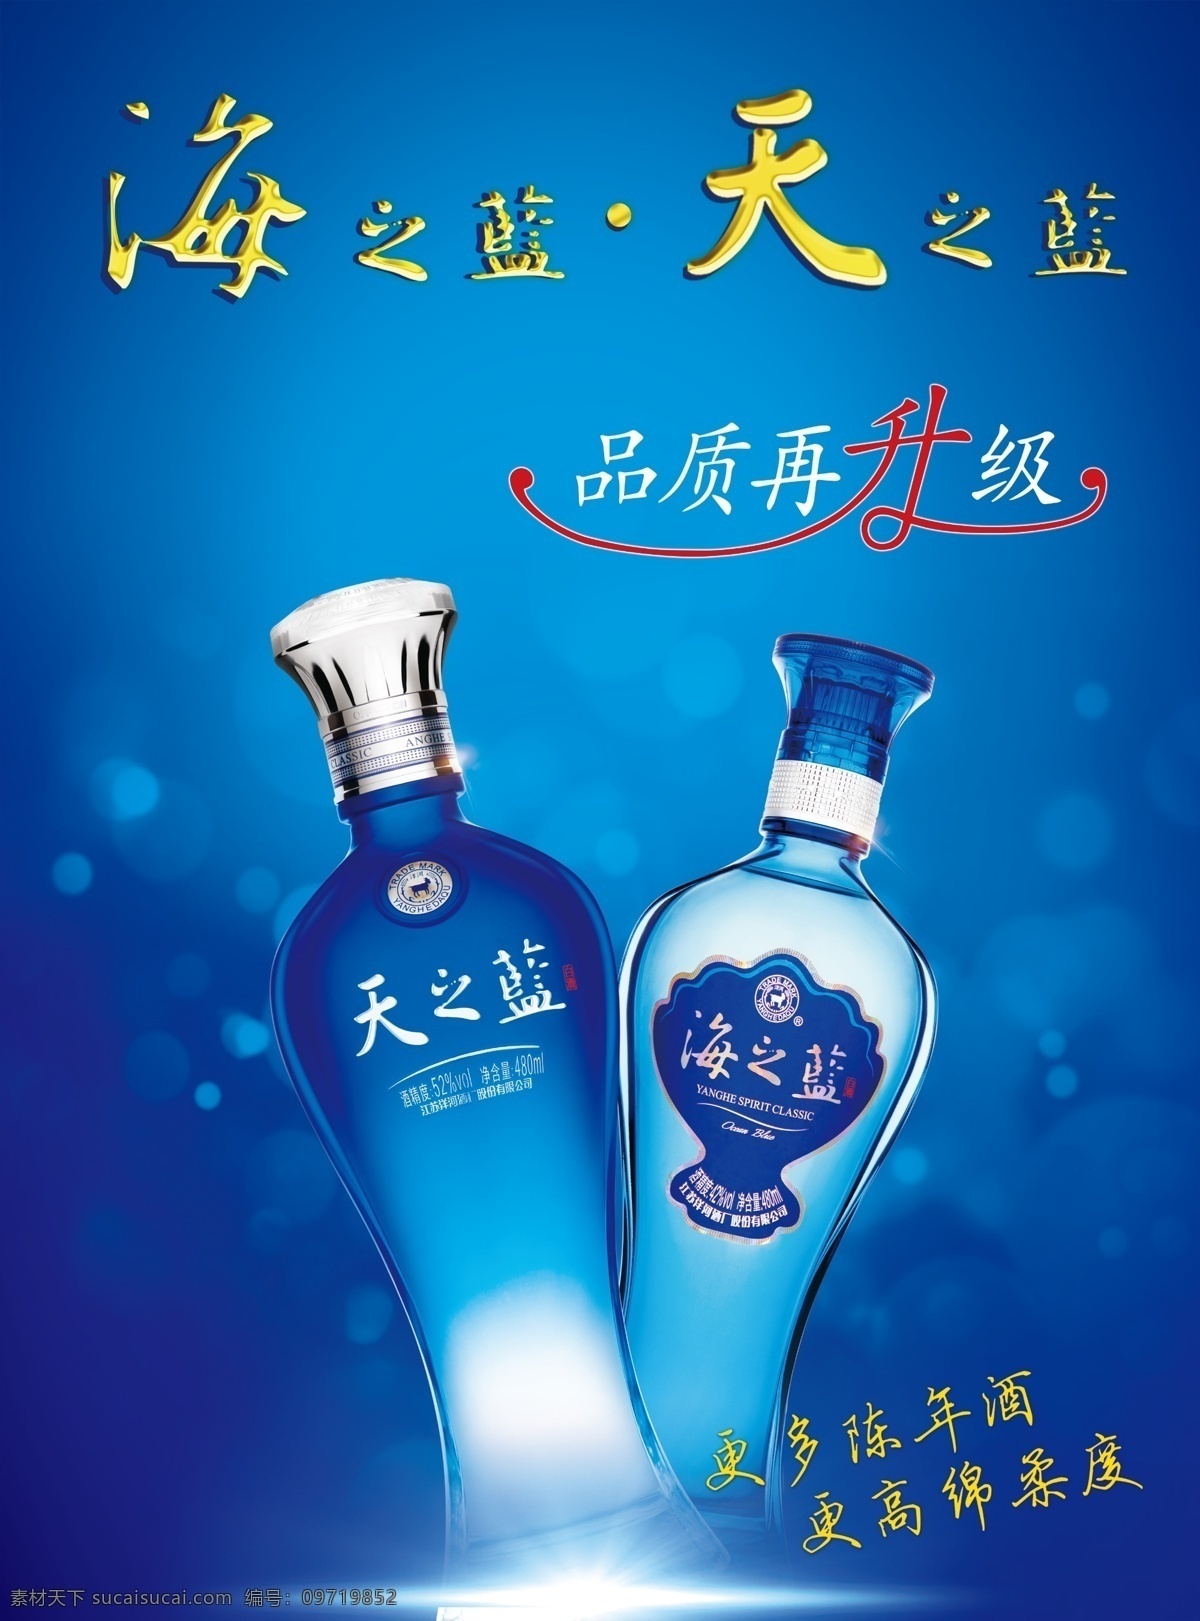 新版 洋河 蓝色 经典 新版洋河 天之蓝 海之蓝 品质再升级 新版酒瓶 分层